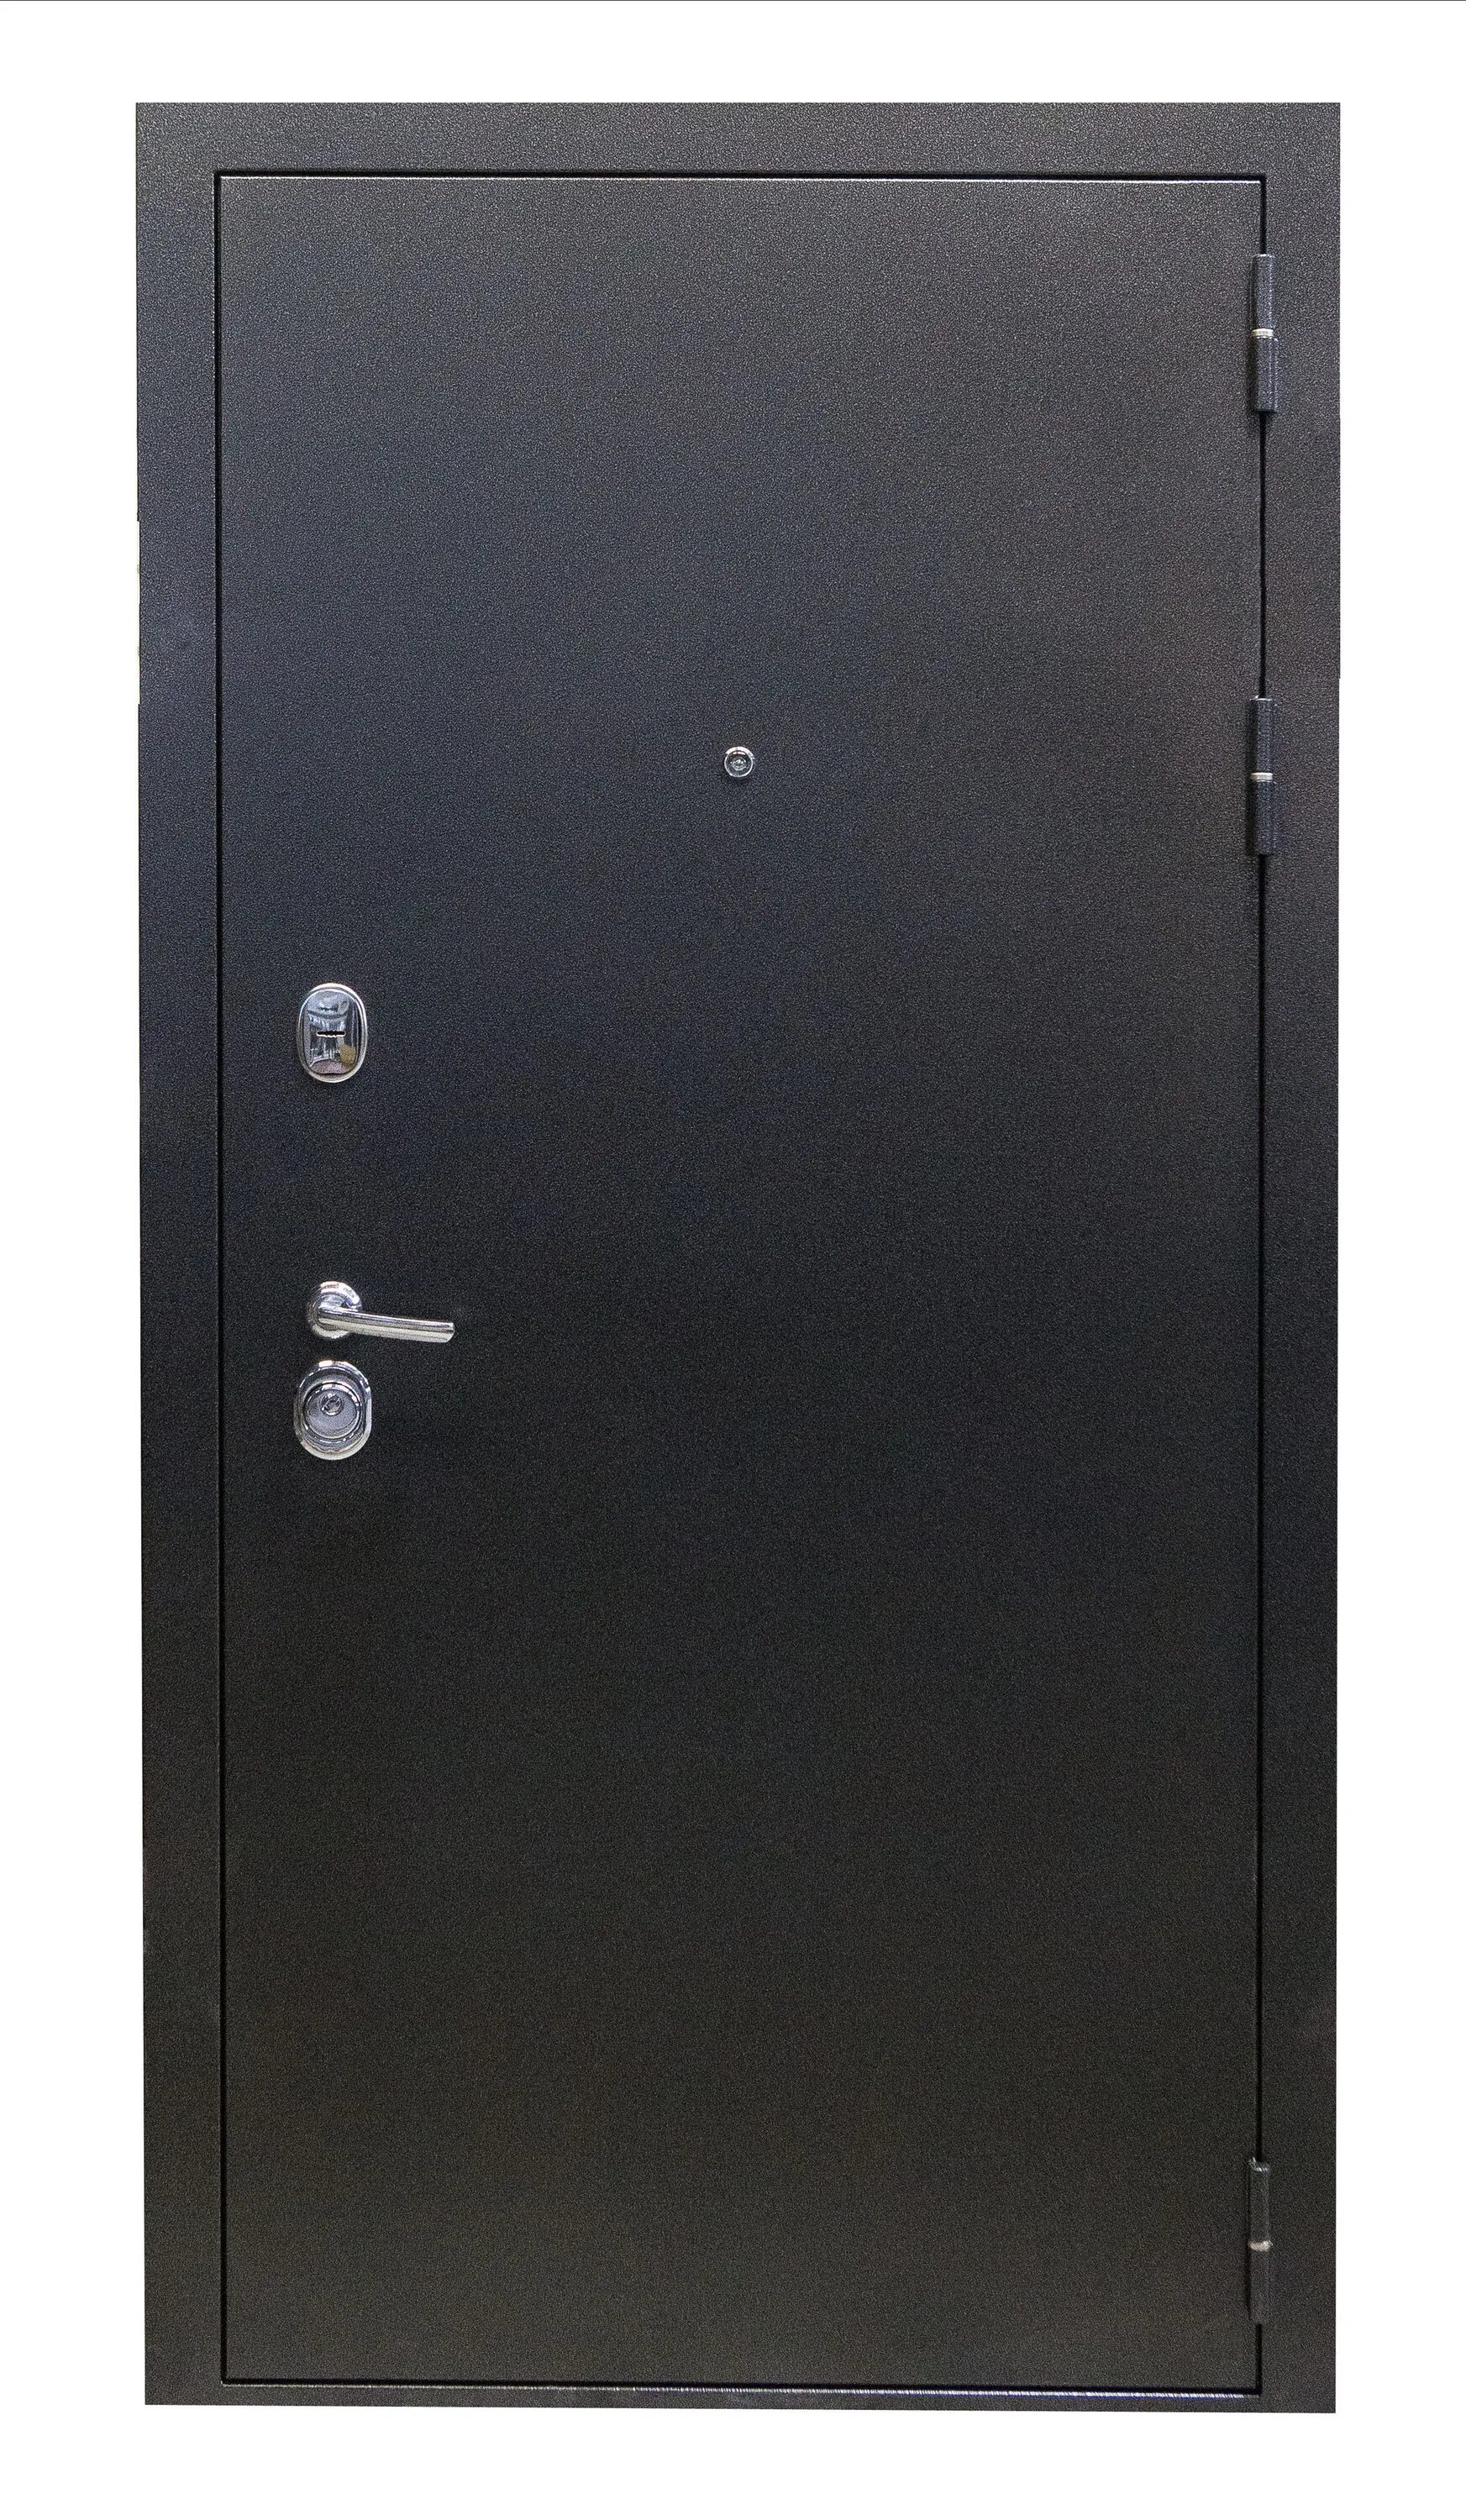 Купить металлическую дверь в нижнем новгороде. Дверь выбор м2. Дверь входная Family Eco метал/ метал. Входная металлическая дверь Onega мп2 2300*930 мм. Металлические двери 2мм сталь Норд Фокс.